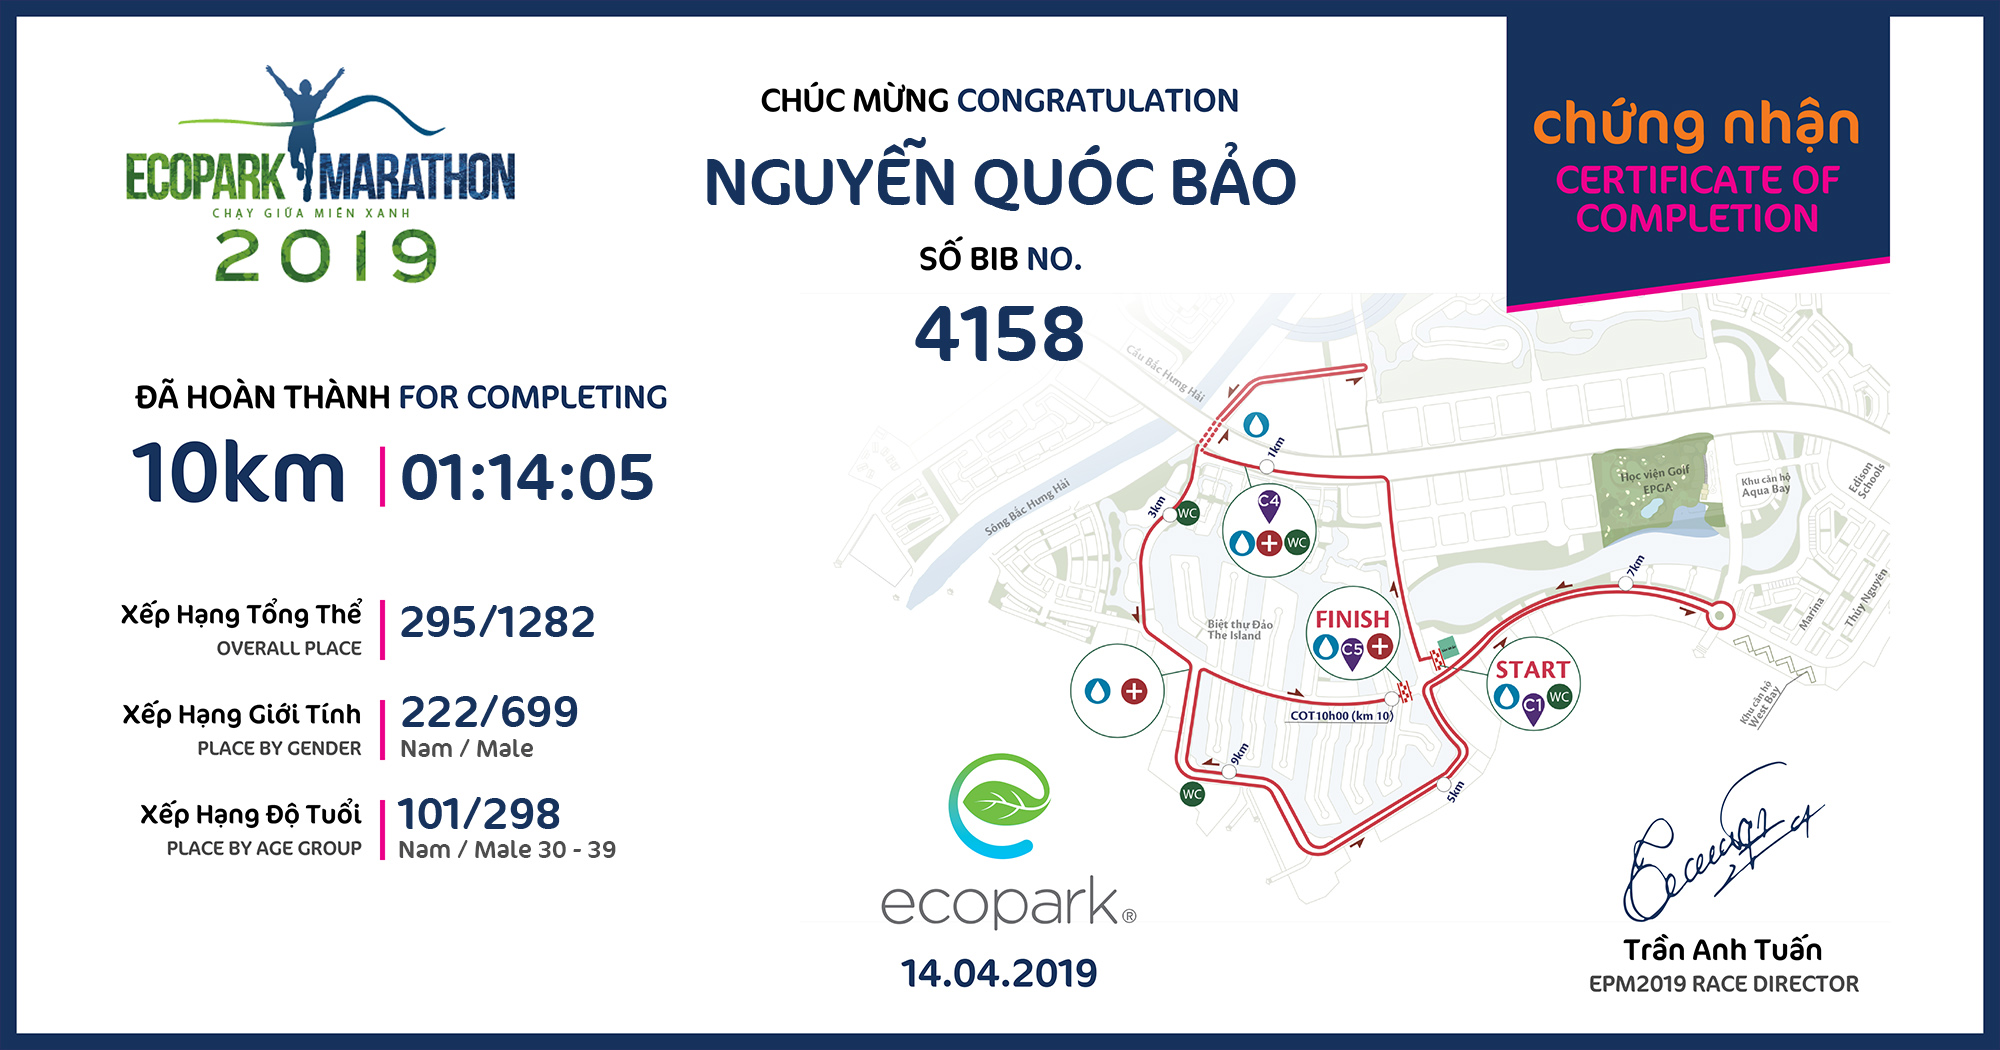 4158 - Nguyễn Quóc Bảo